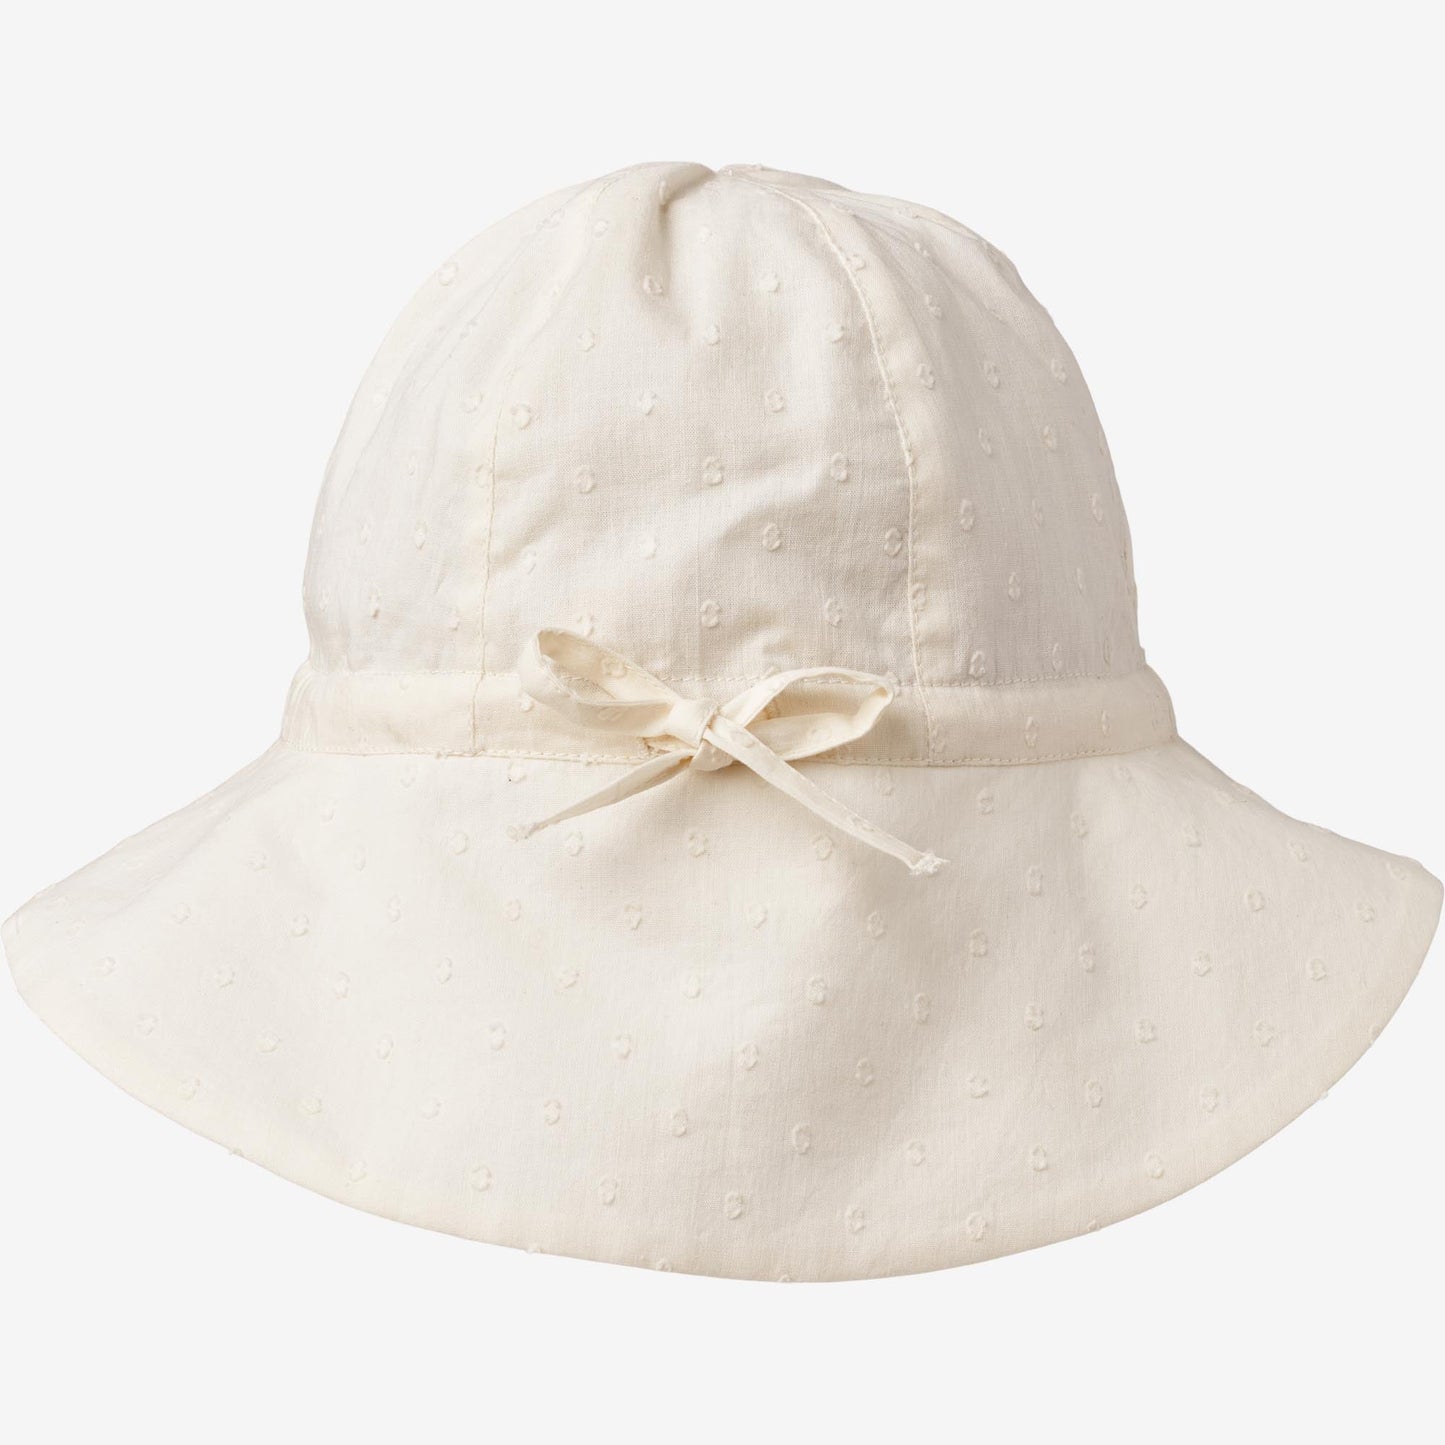 Wheat 'Chloè' Baby Sun Hat - Cream